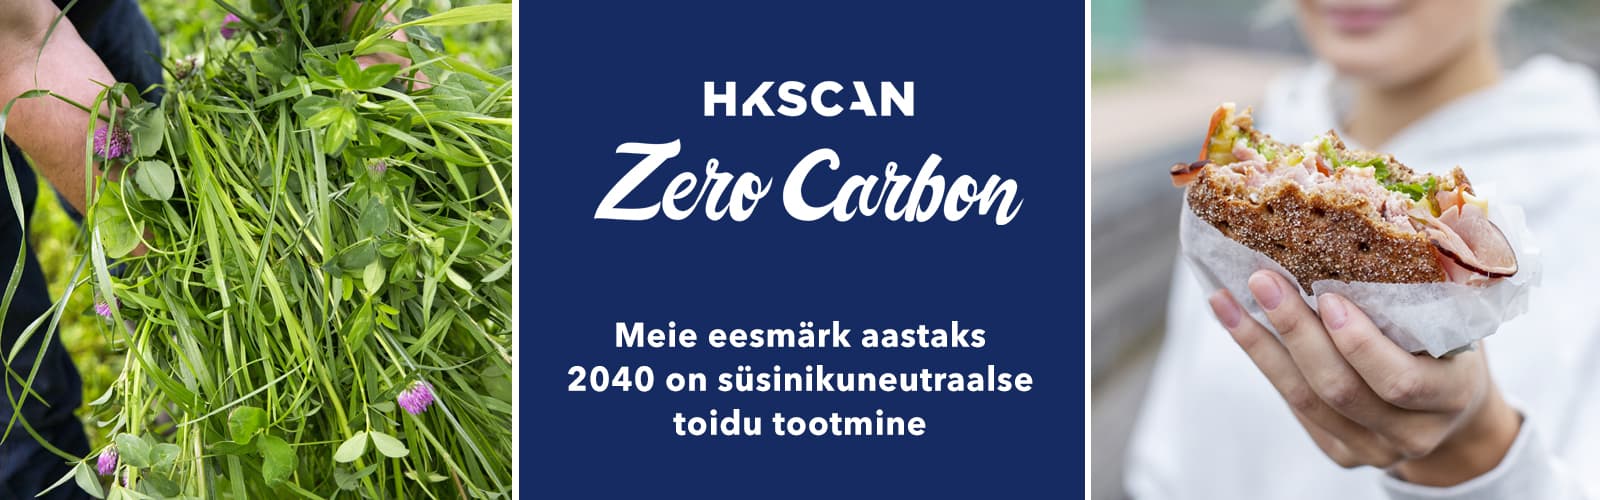 EST ZeroCarbon wwwkuva 1600x500 (002)